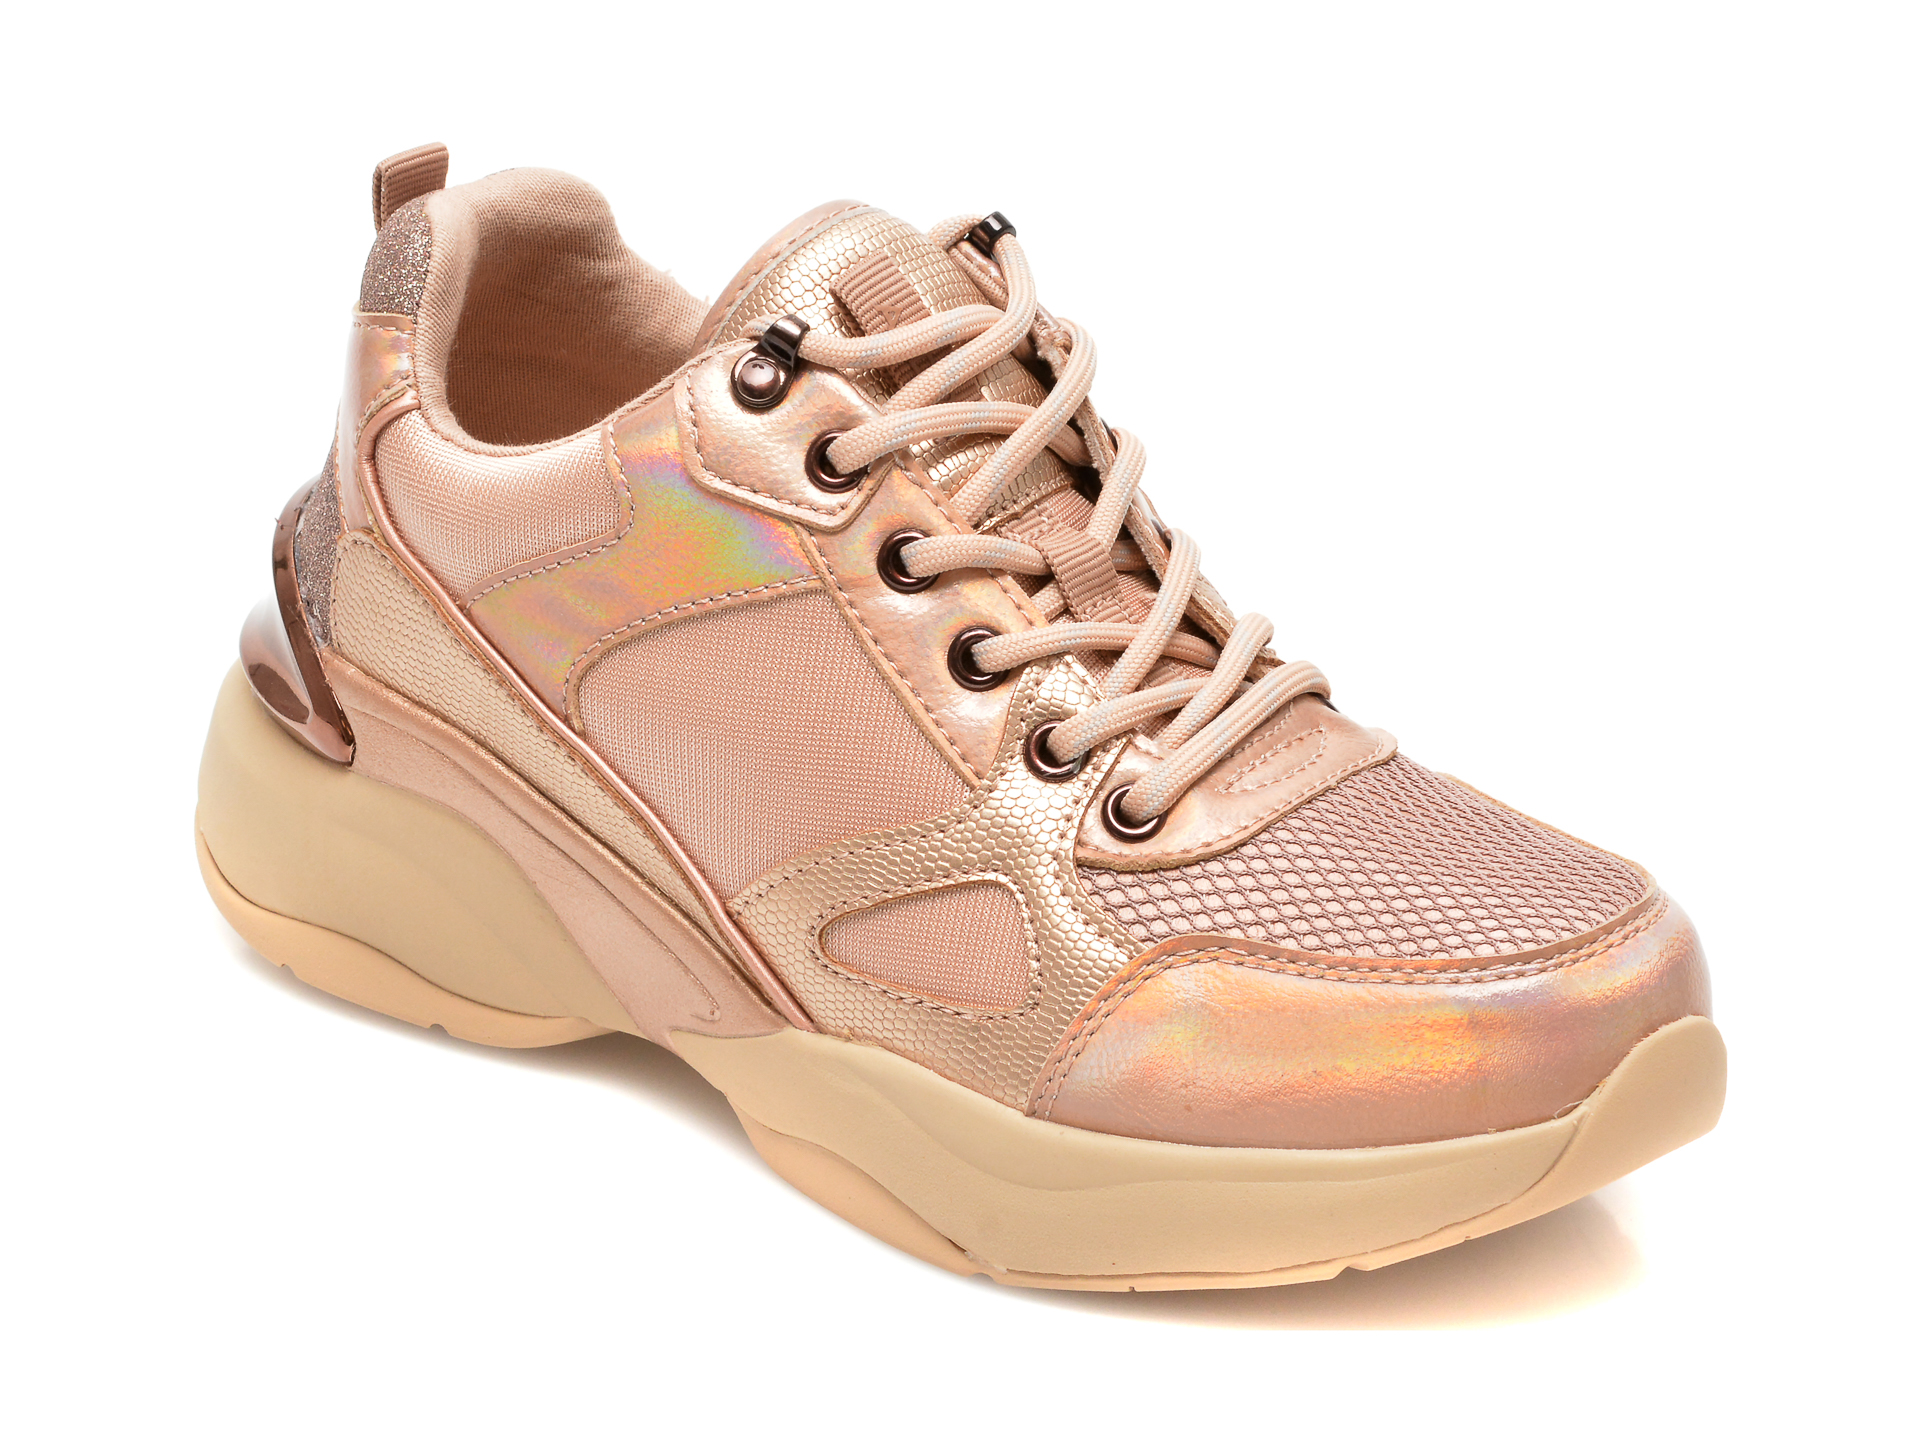 Pantofi sport ALDO nude, ASTIARI653, din material textil si piele ecologica Aldo imagine reduceri